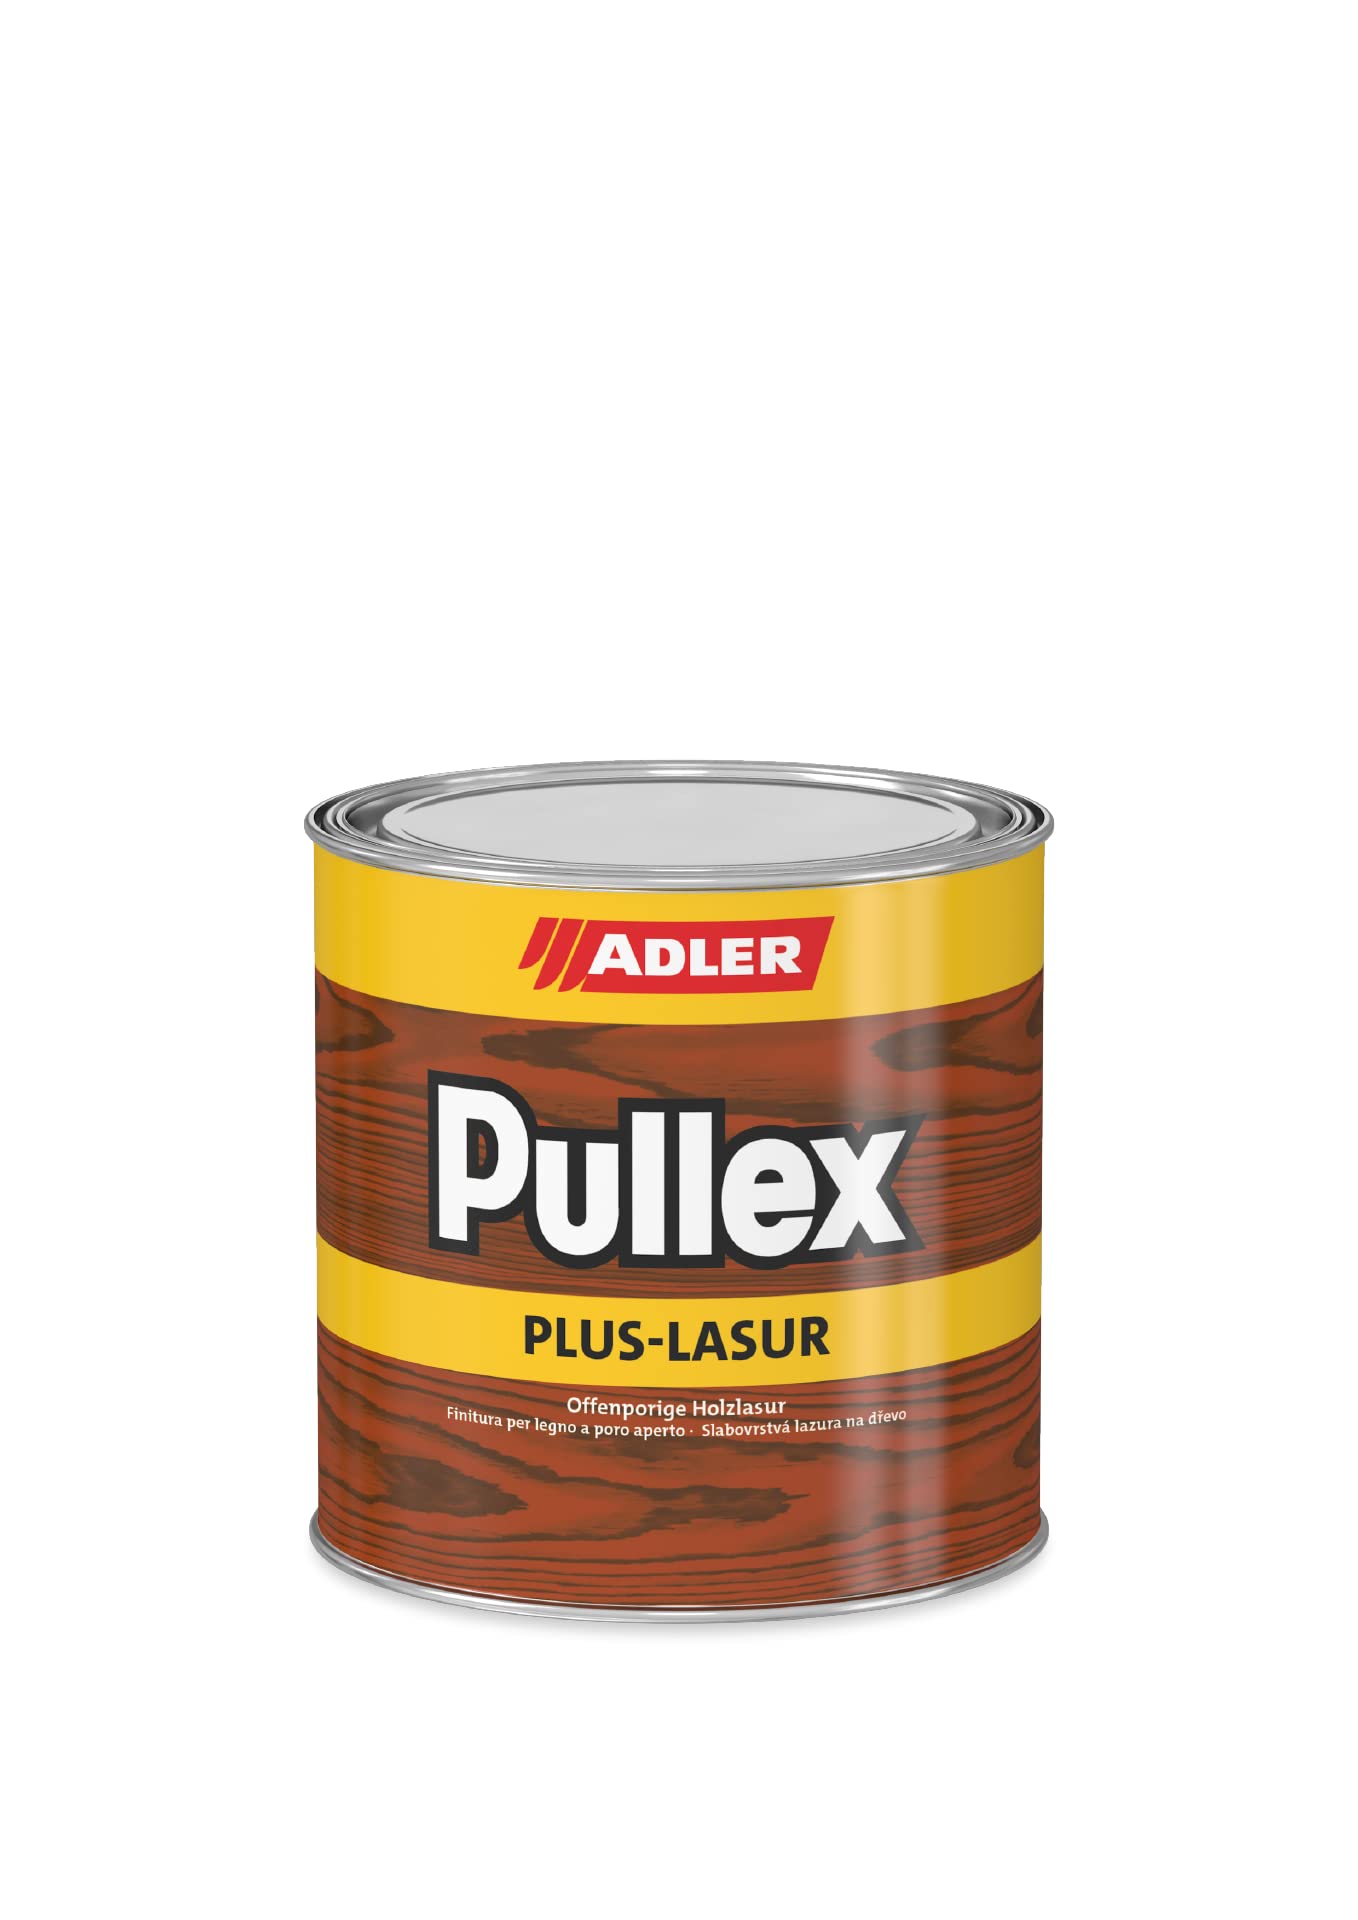 ADLER Pullex Plus-Lasur - Holzlasur Außen Farblos - Universell einsetzbare & aromatenfreie Holzschutzlasur als perfekter UV- & Wetterschutz - 2,5 l Sipo/Braun